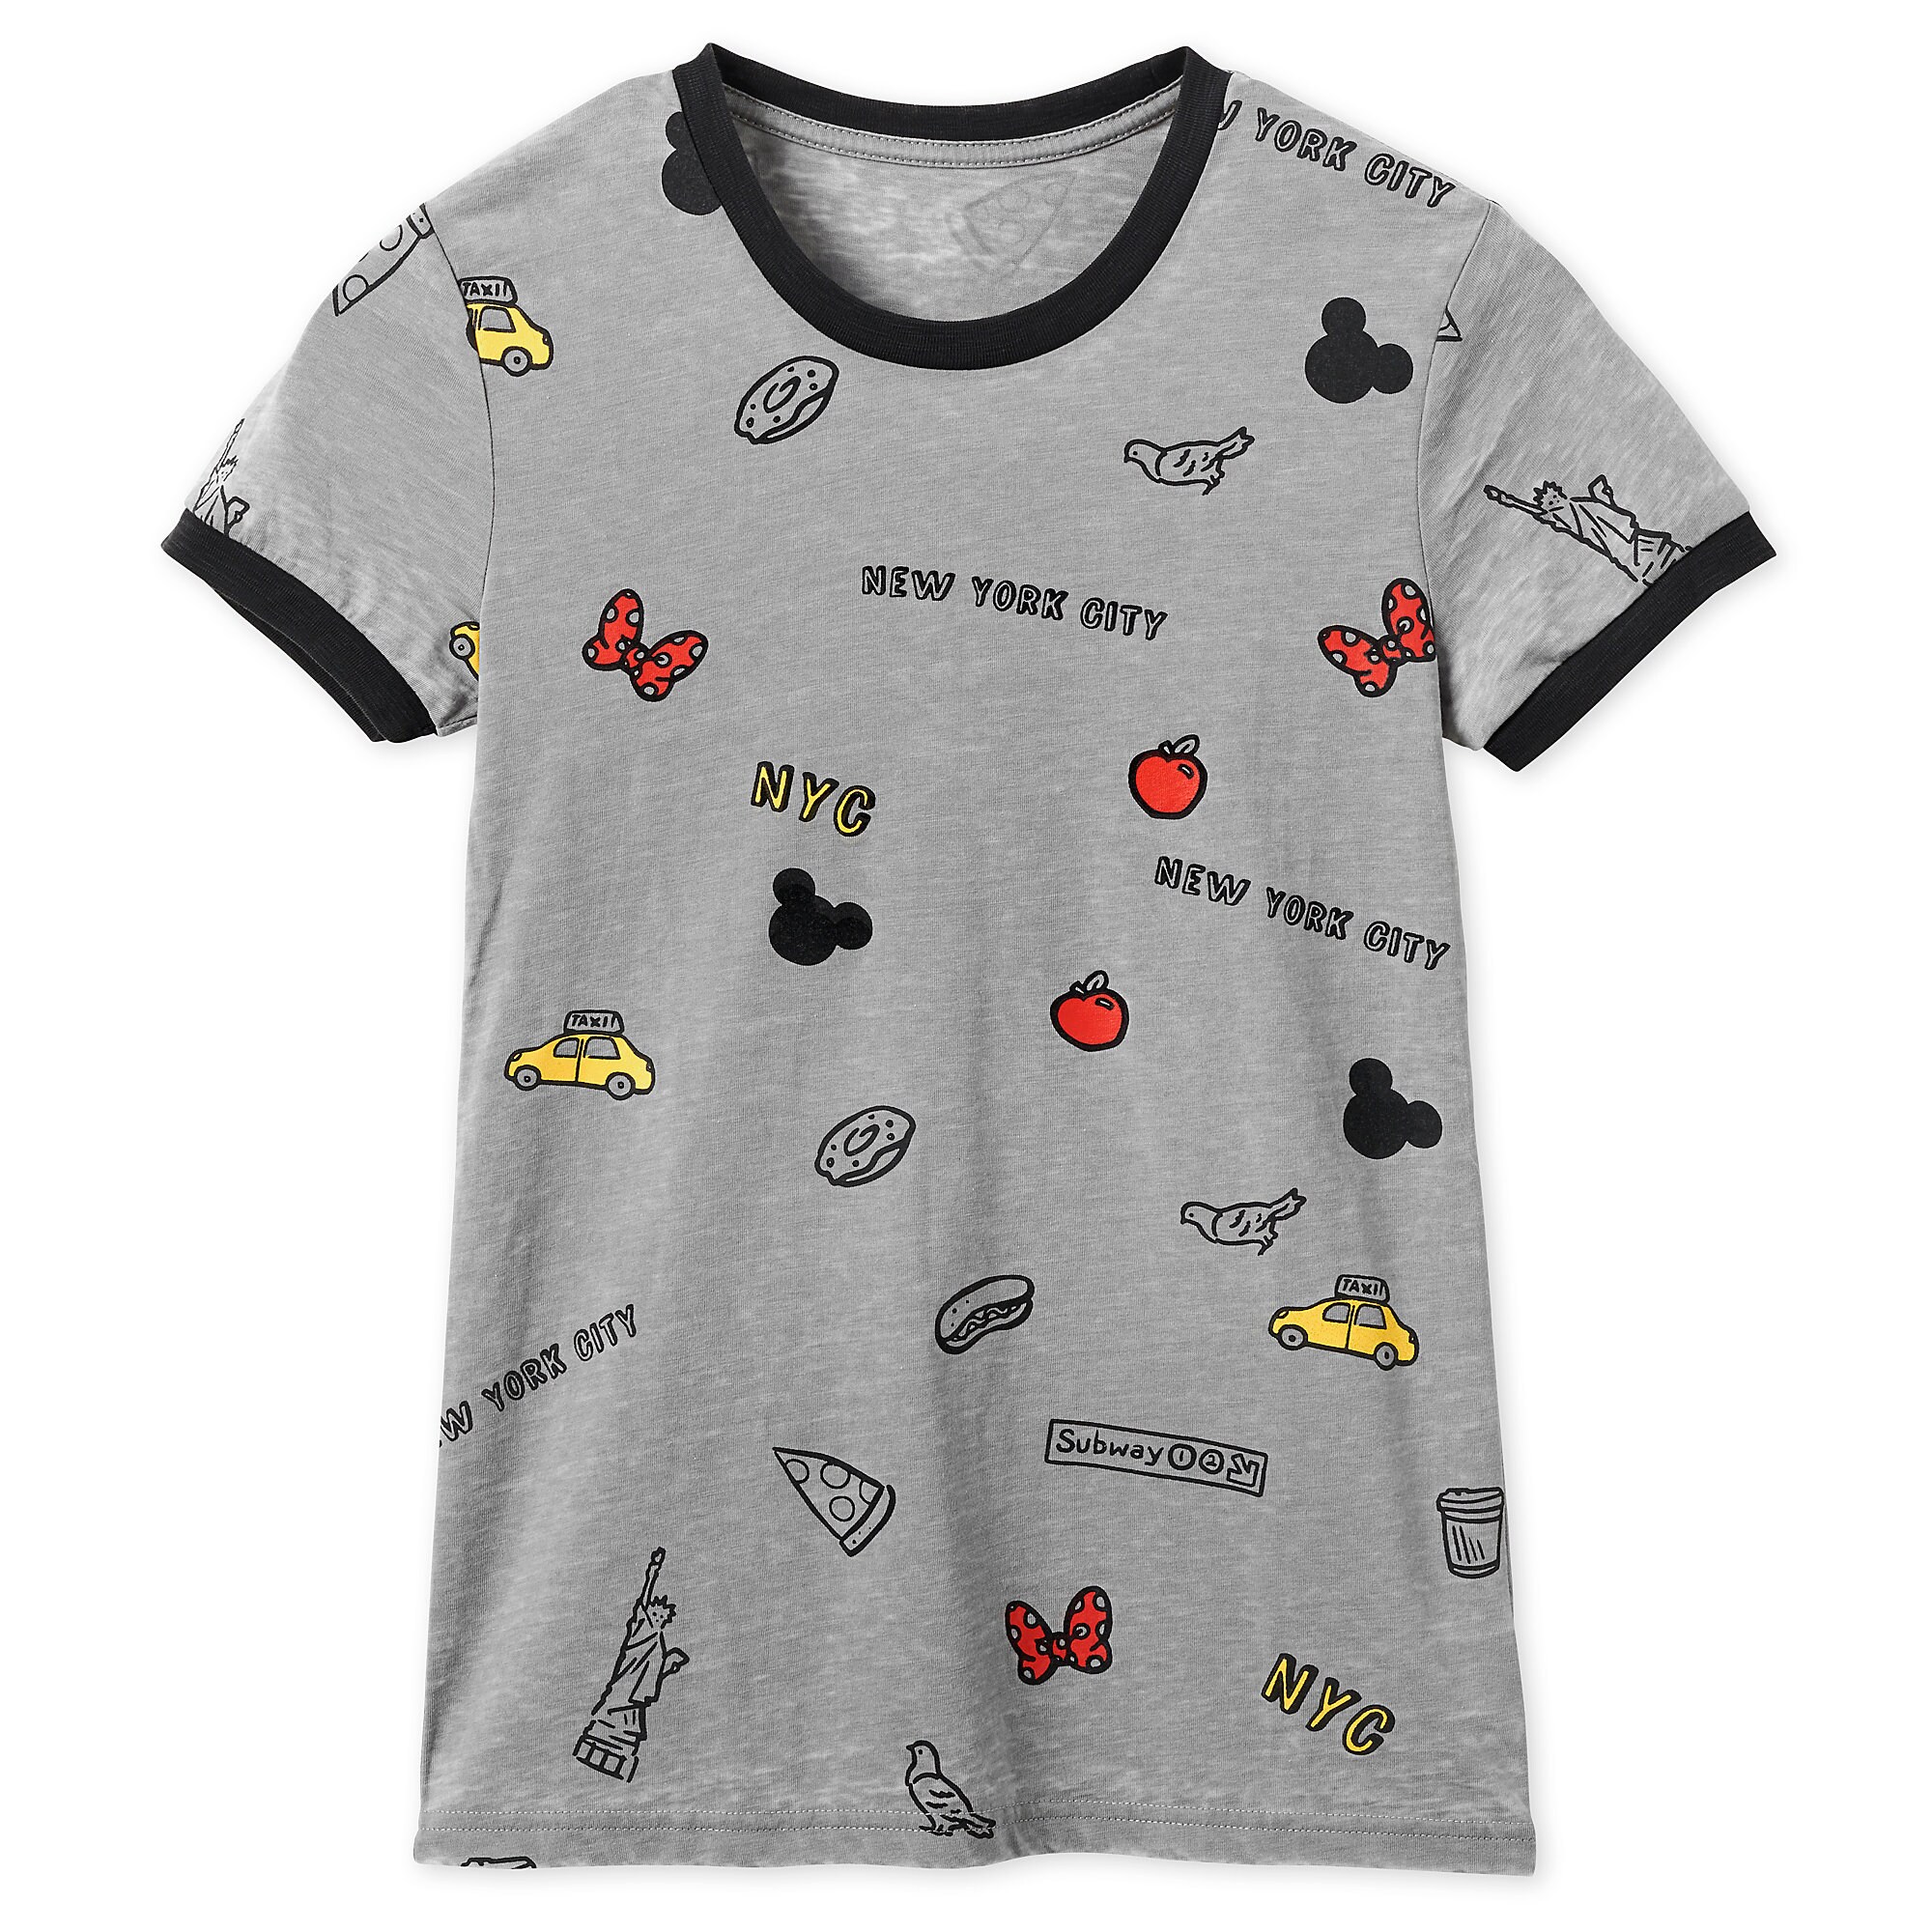 Mickey Mouse Ringer T-Shirt for Women - New York City